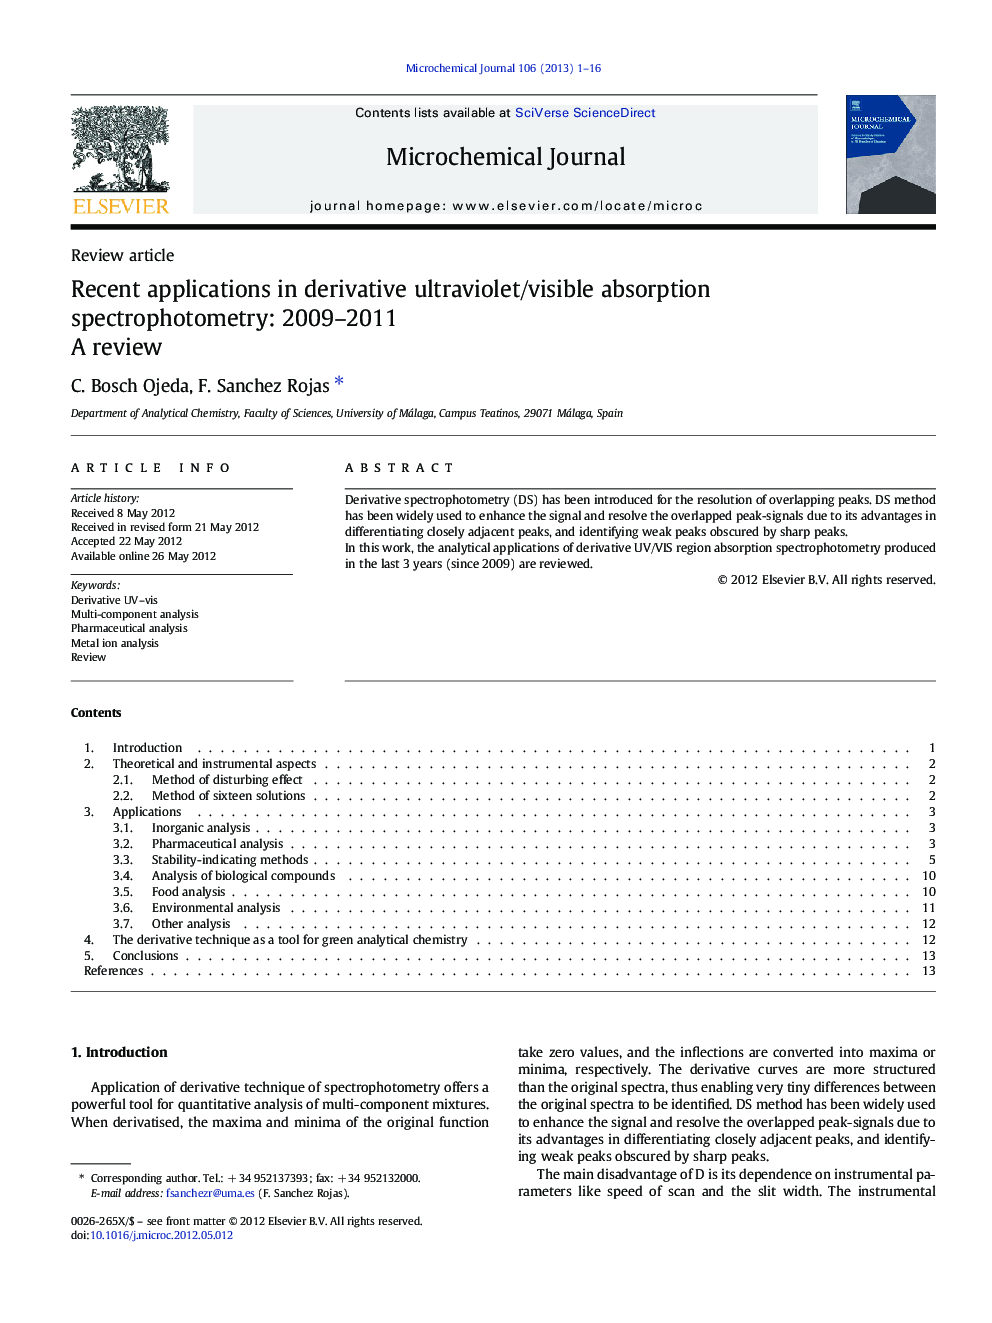 کاربرد های اخیر در اسپکتروفتومتری جذب ماوراء بنفش / جذب مشتق شده: 2009-2011 